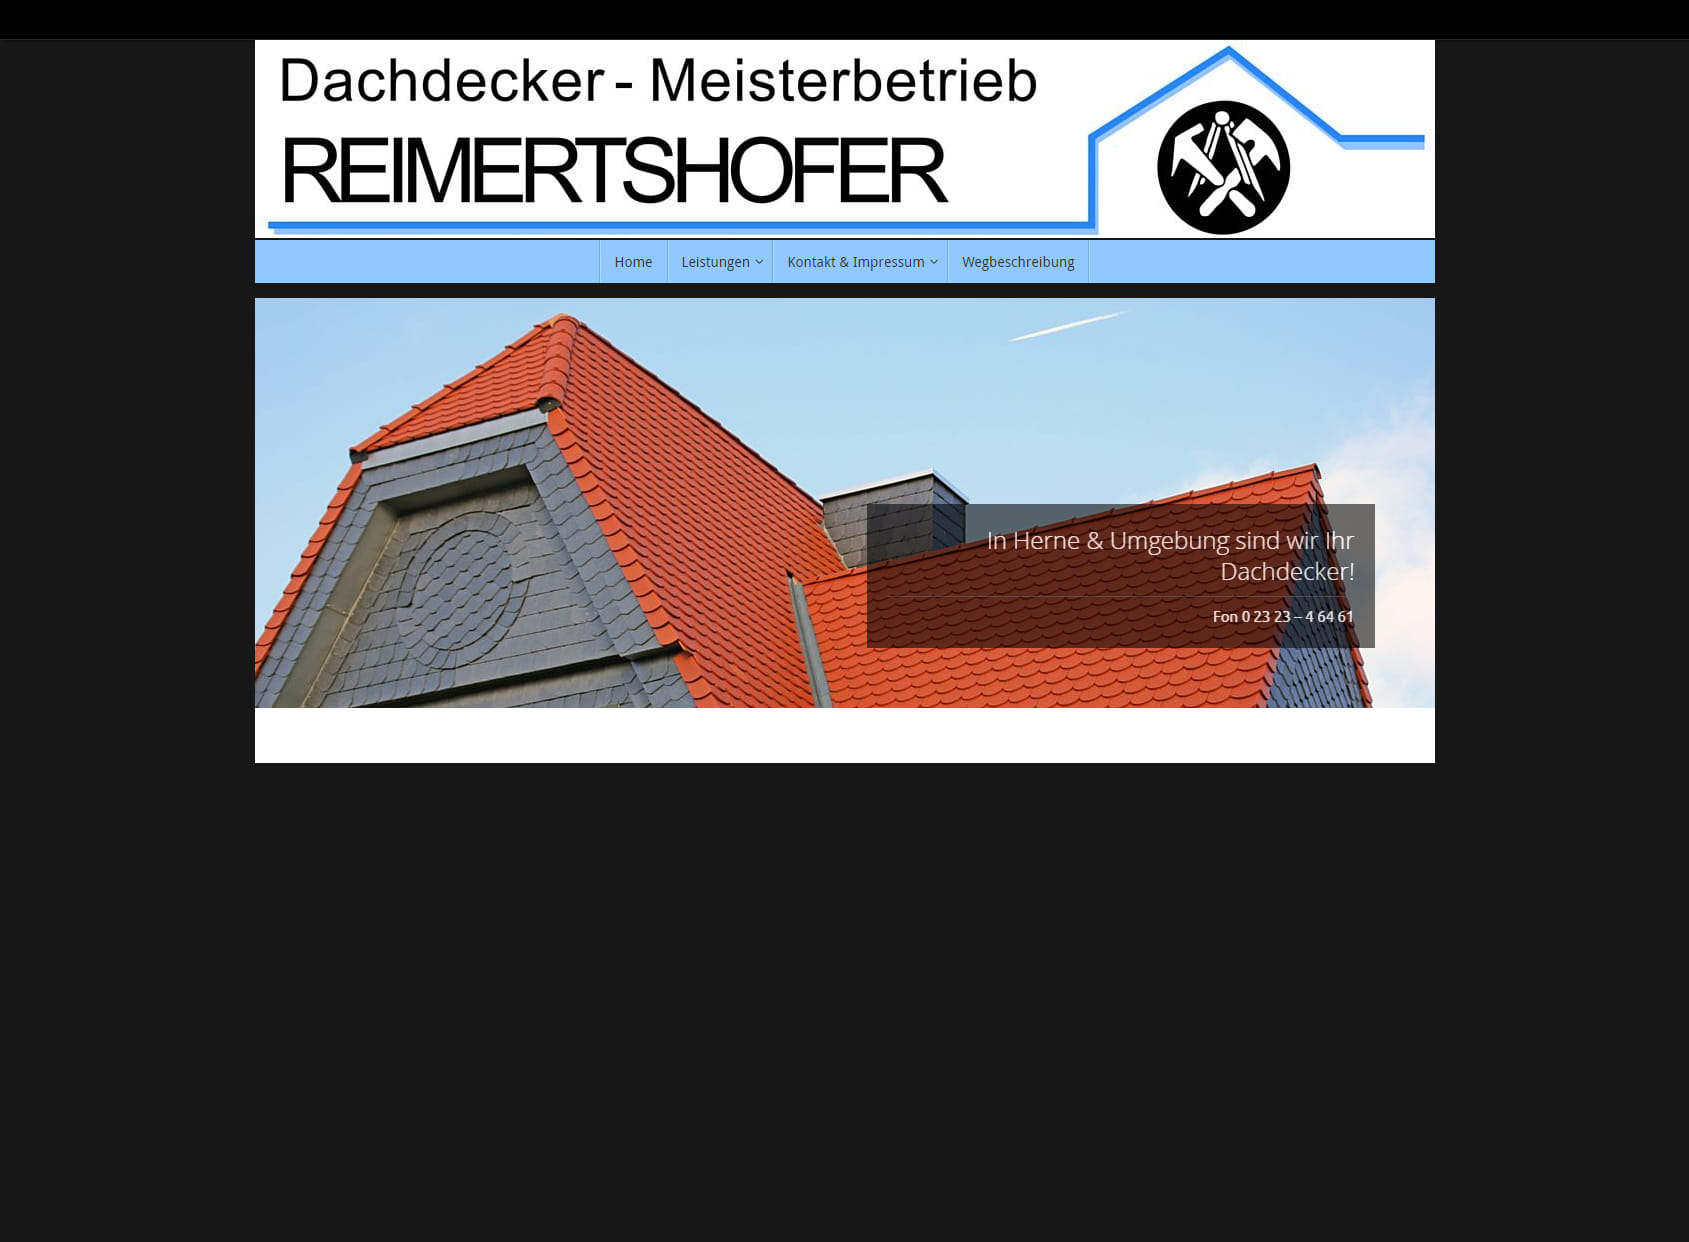 Dachdecker-Meisterbetrieb REIMERTSHOFER